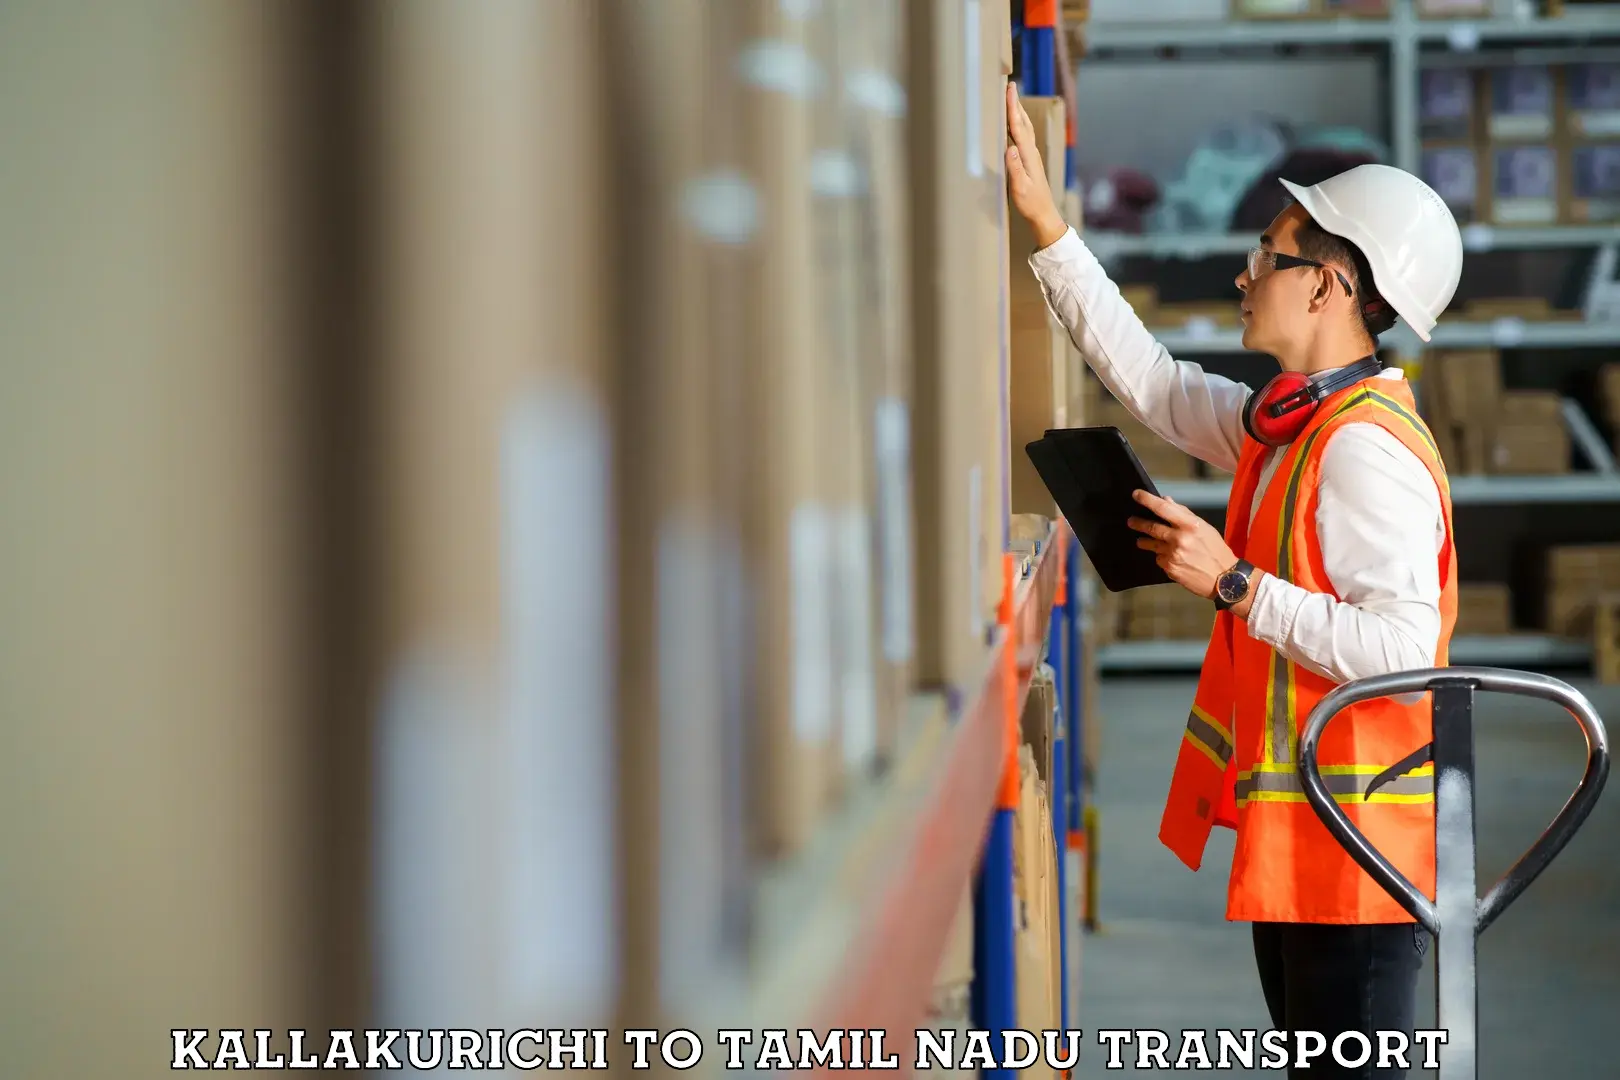 Transport shared services Kallakurichi to IIIT Tiruchirappalli